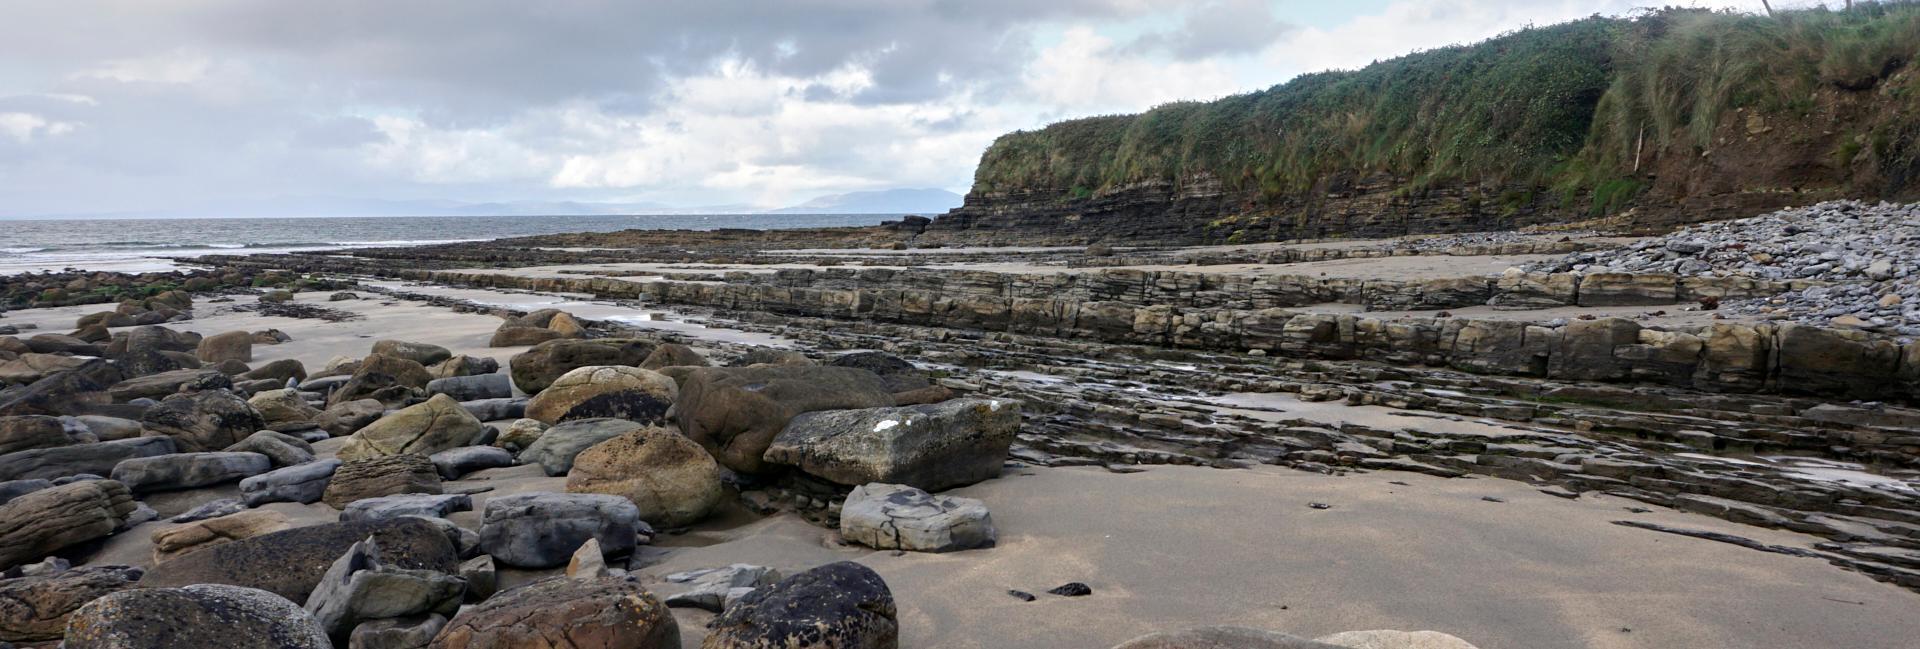 Streedagh strand, Co. Sligo - a fossil-rich coastal beach 